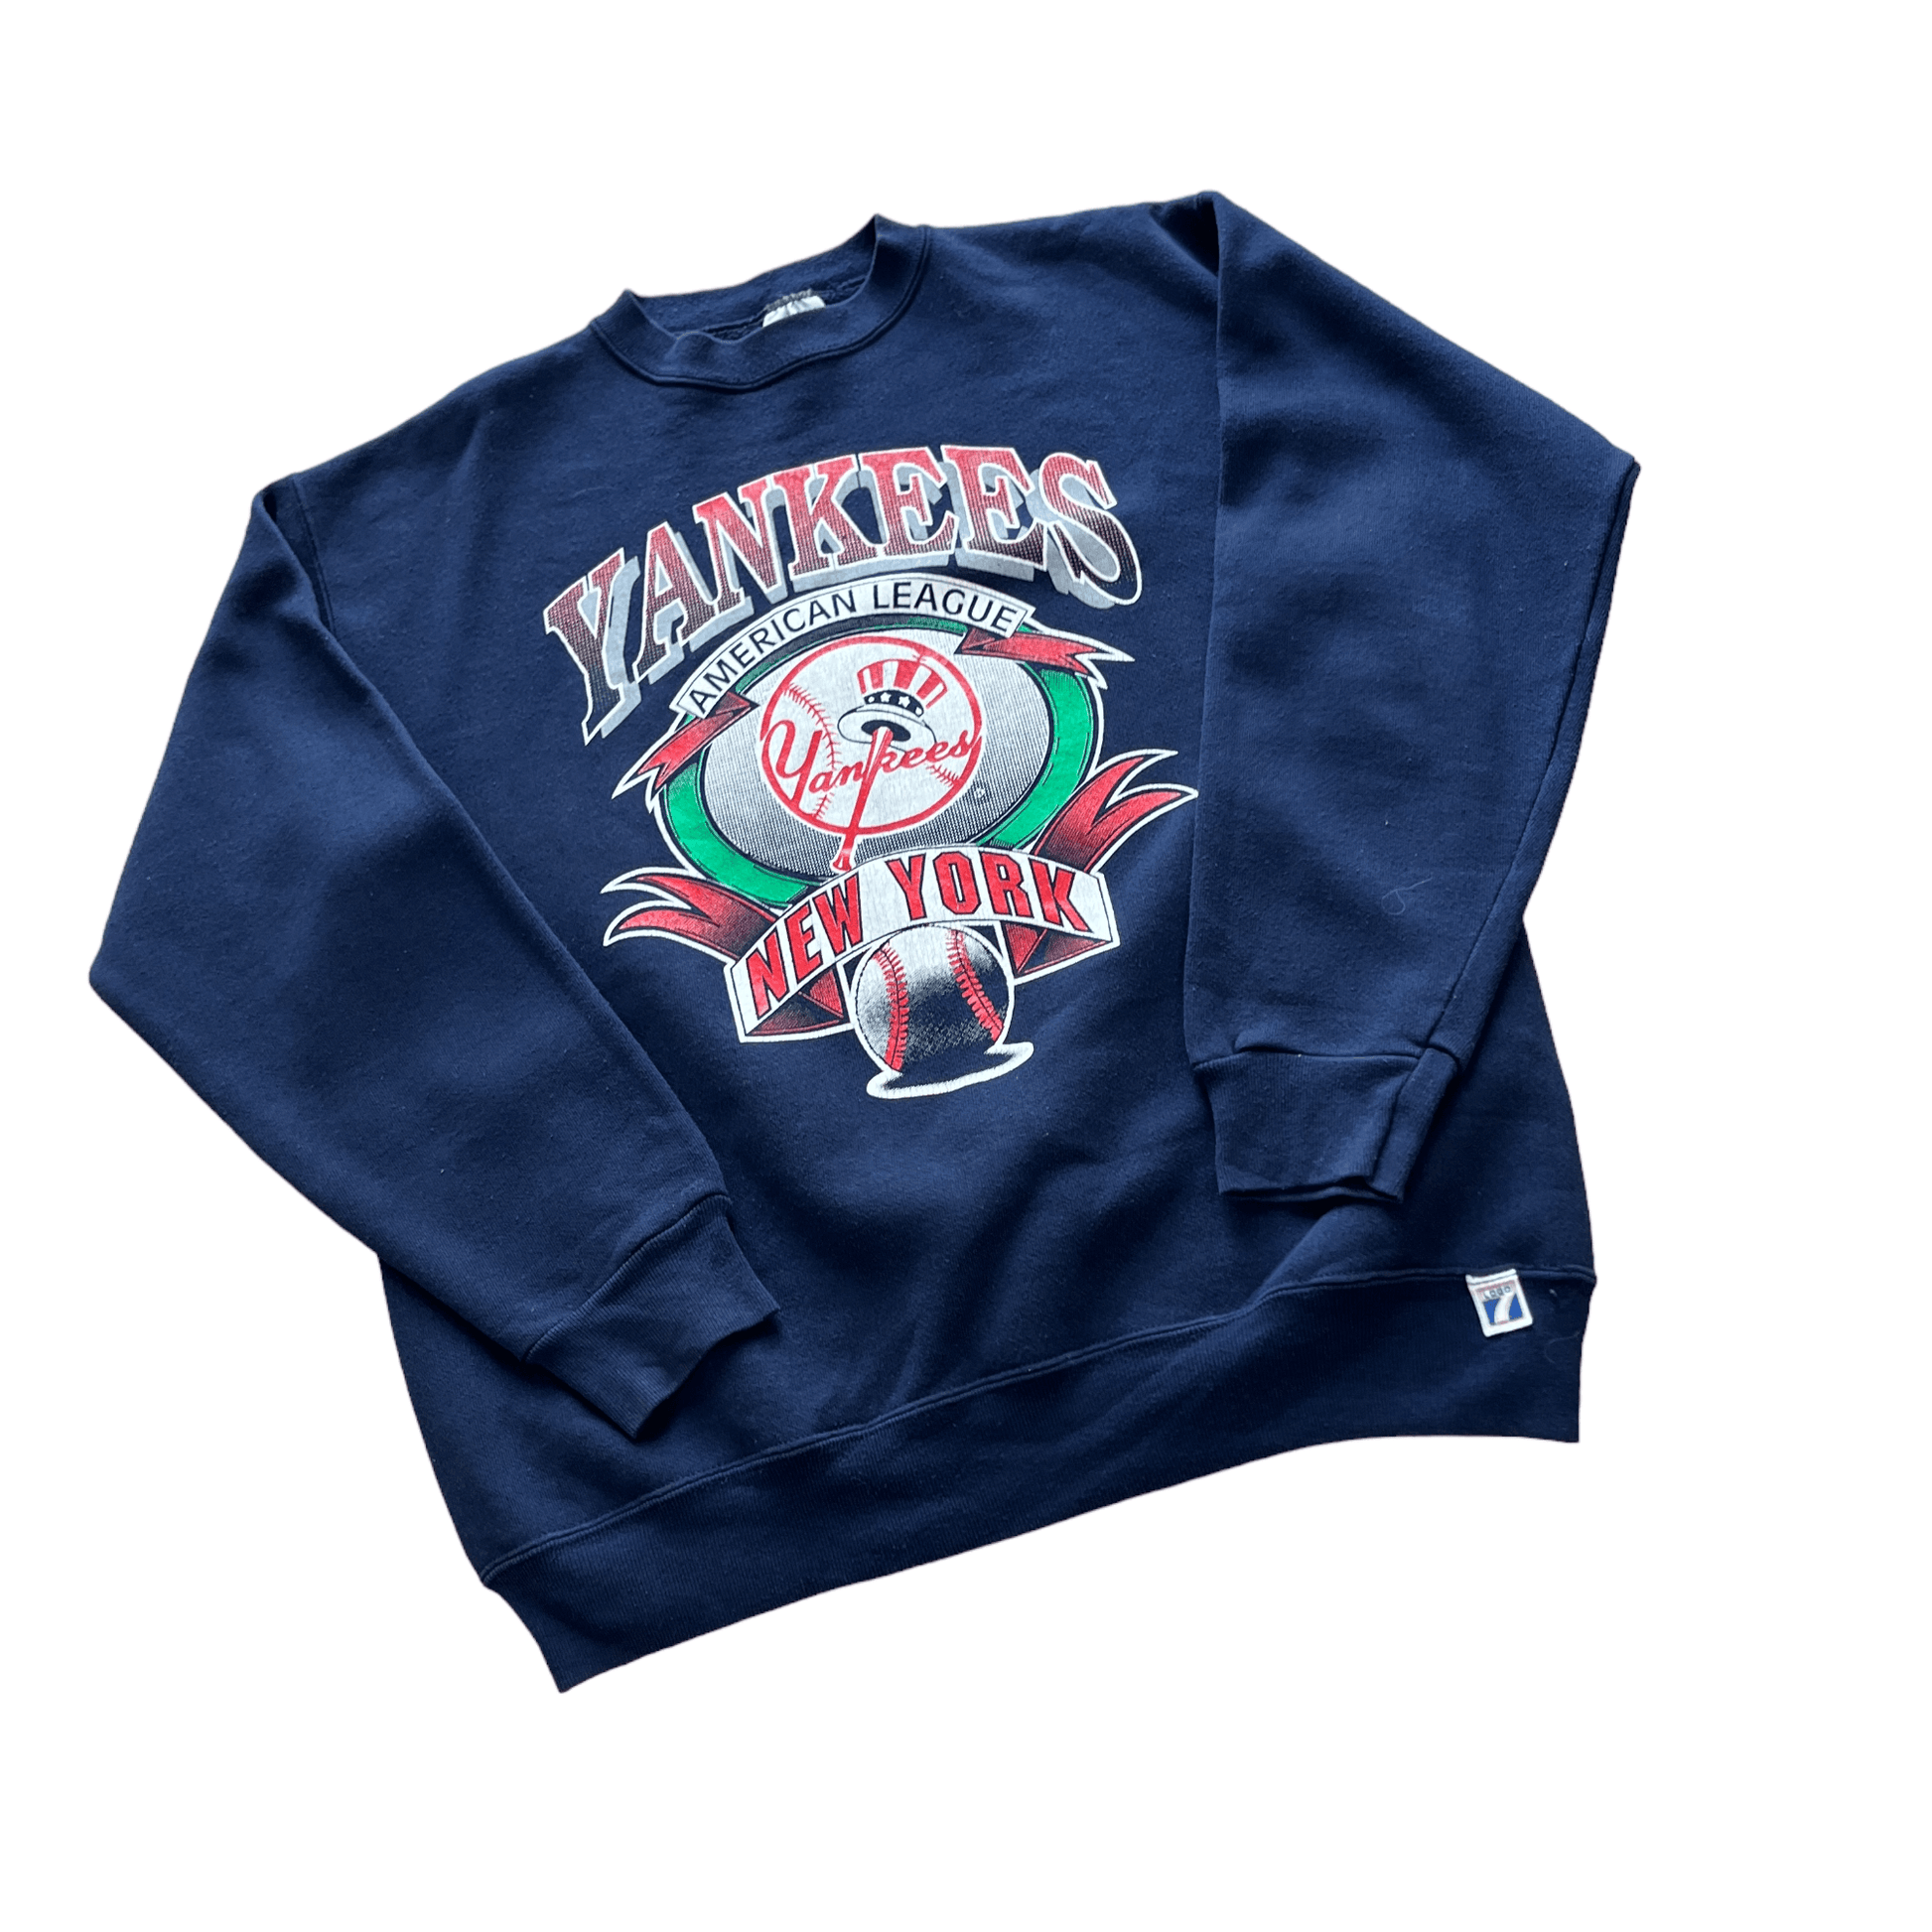 Vintage 90s Navy Blue NBA Yankees Sweatshirt - Large - The Streetwear Studio